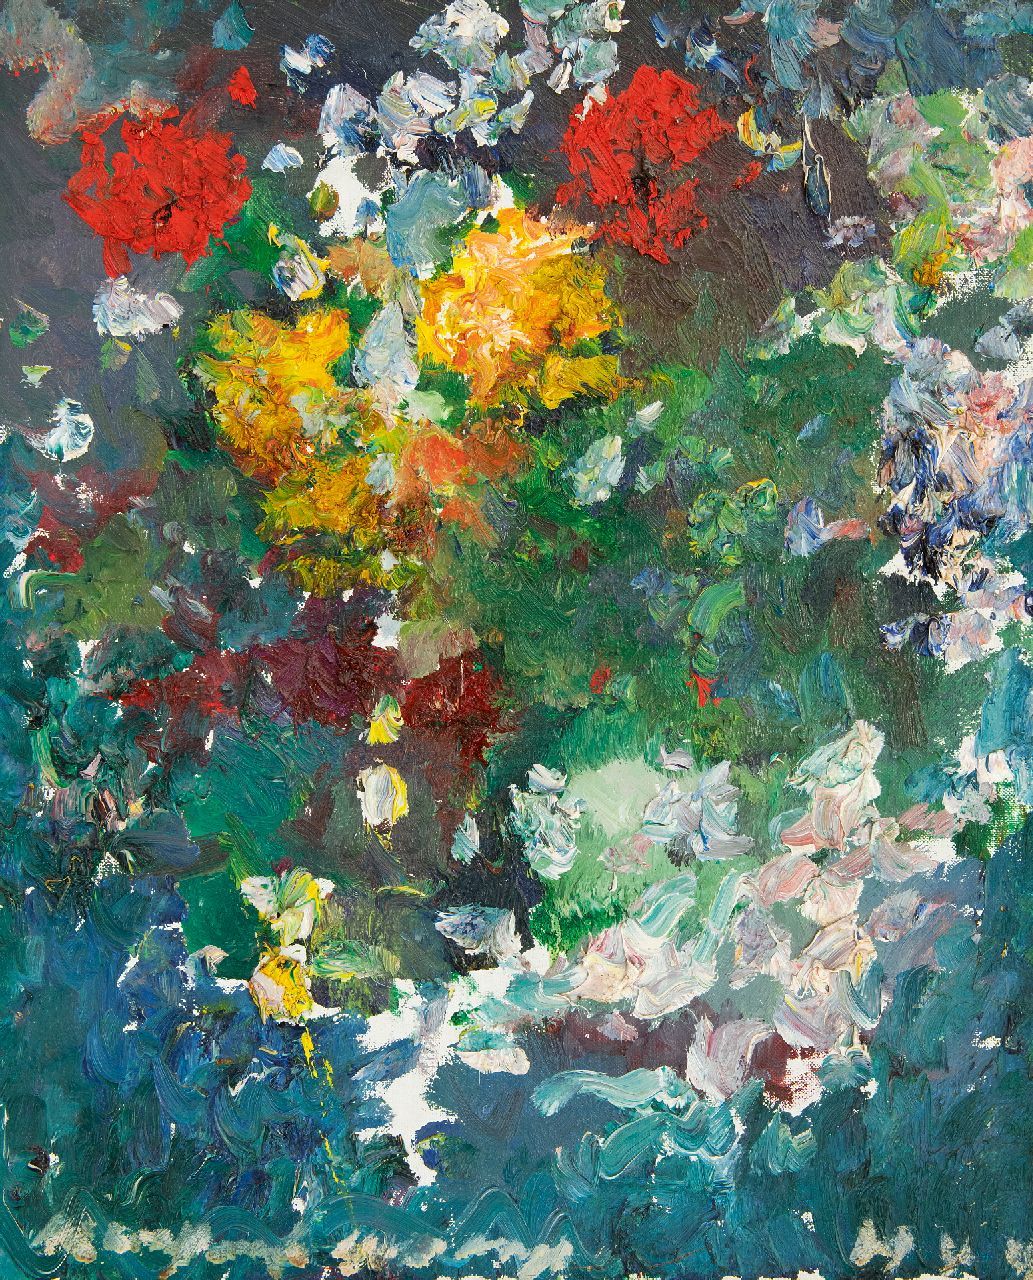 Verwey K.  | Kees Verwey | Schilderijen te koop aangeboden | Bloemen, olieverf op doek 50,0 x 39,7 cm, gesigneerd linksonder en verso en verso gedateerd '83